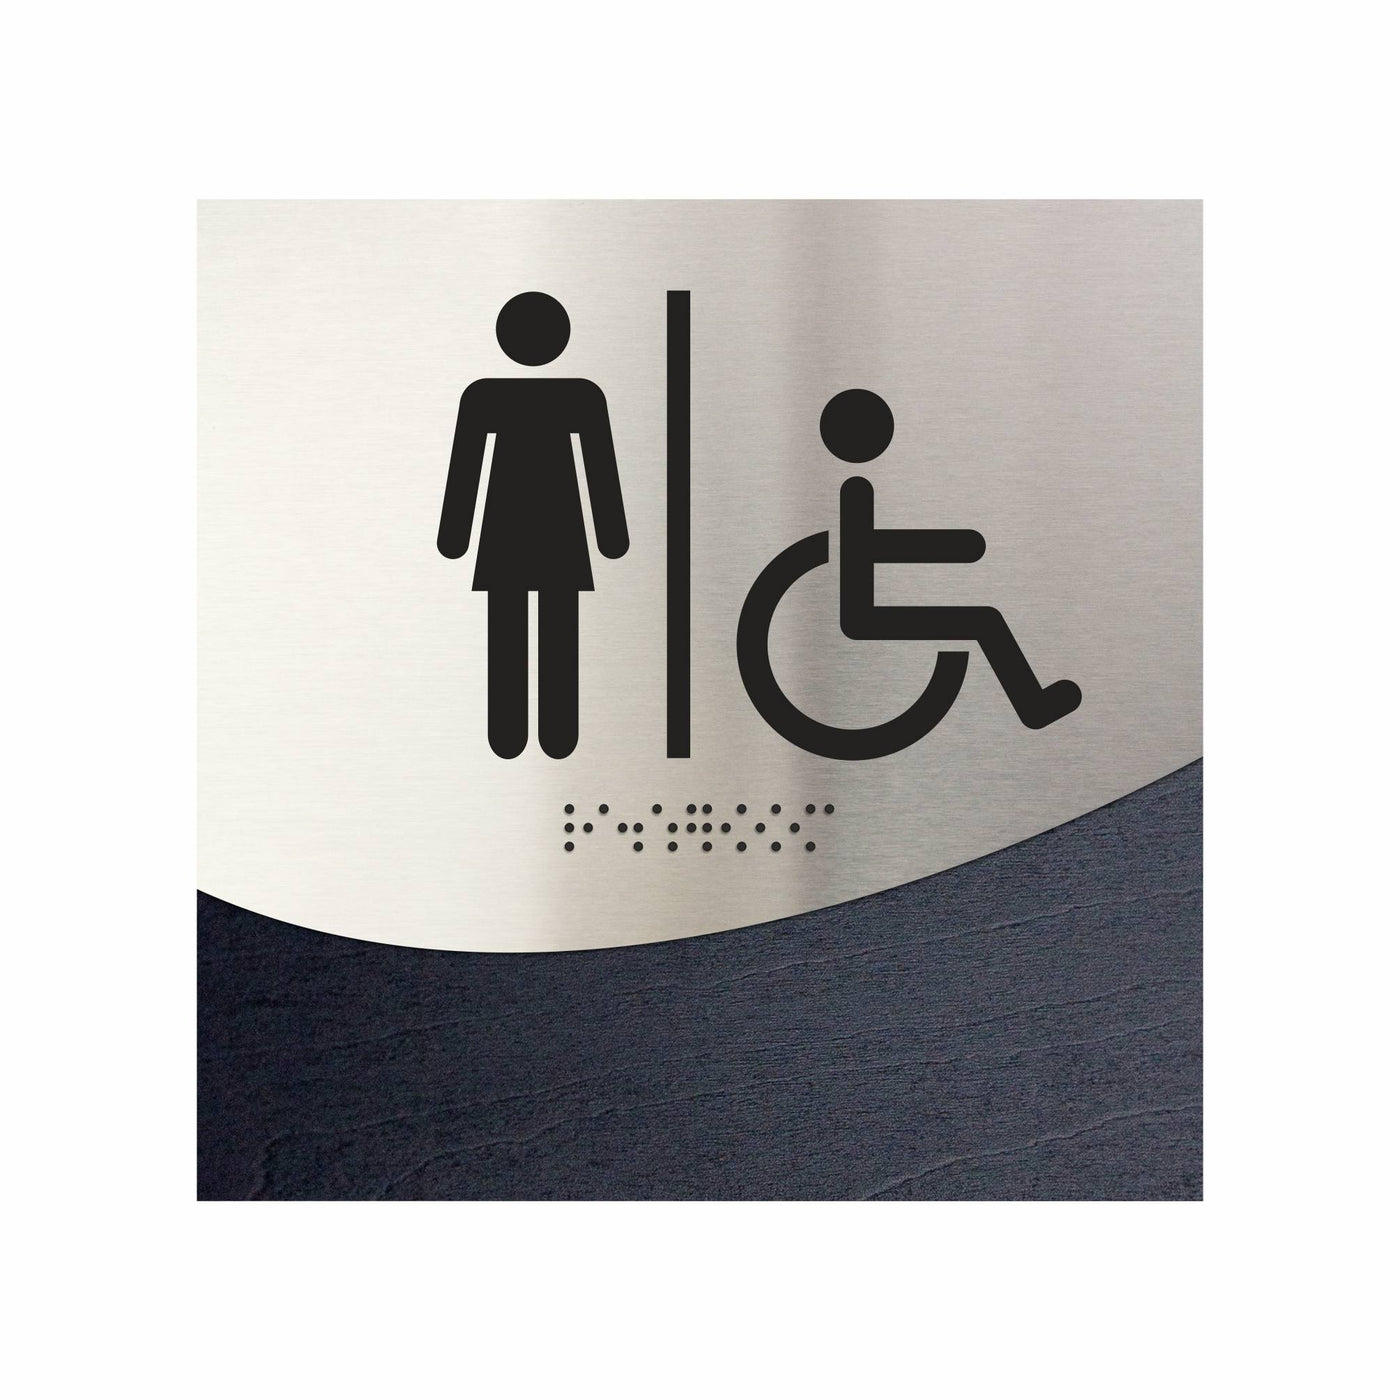 Women & Wheelchair Bathroom Signage "Jure" Design